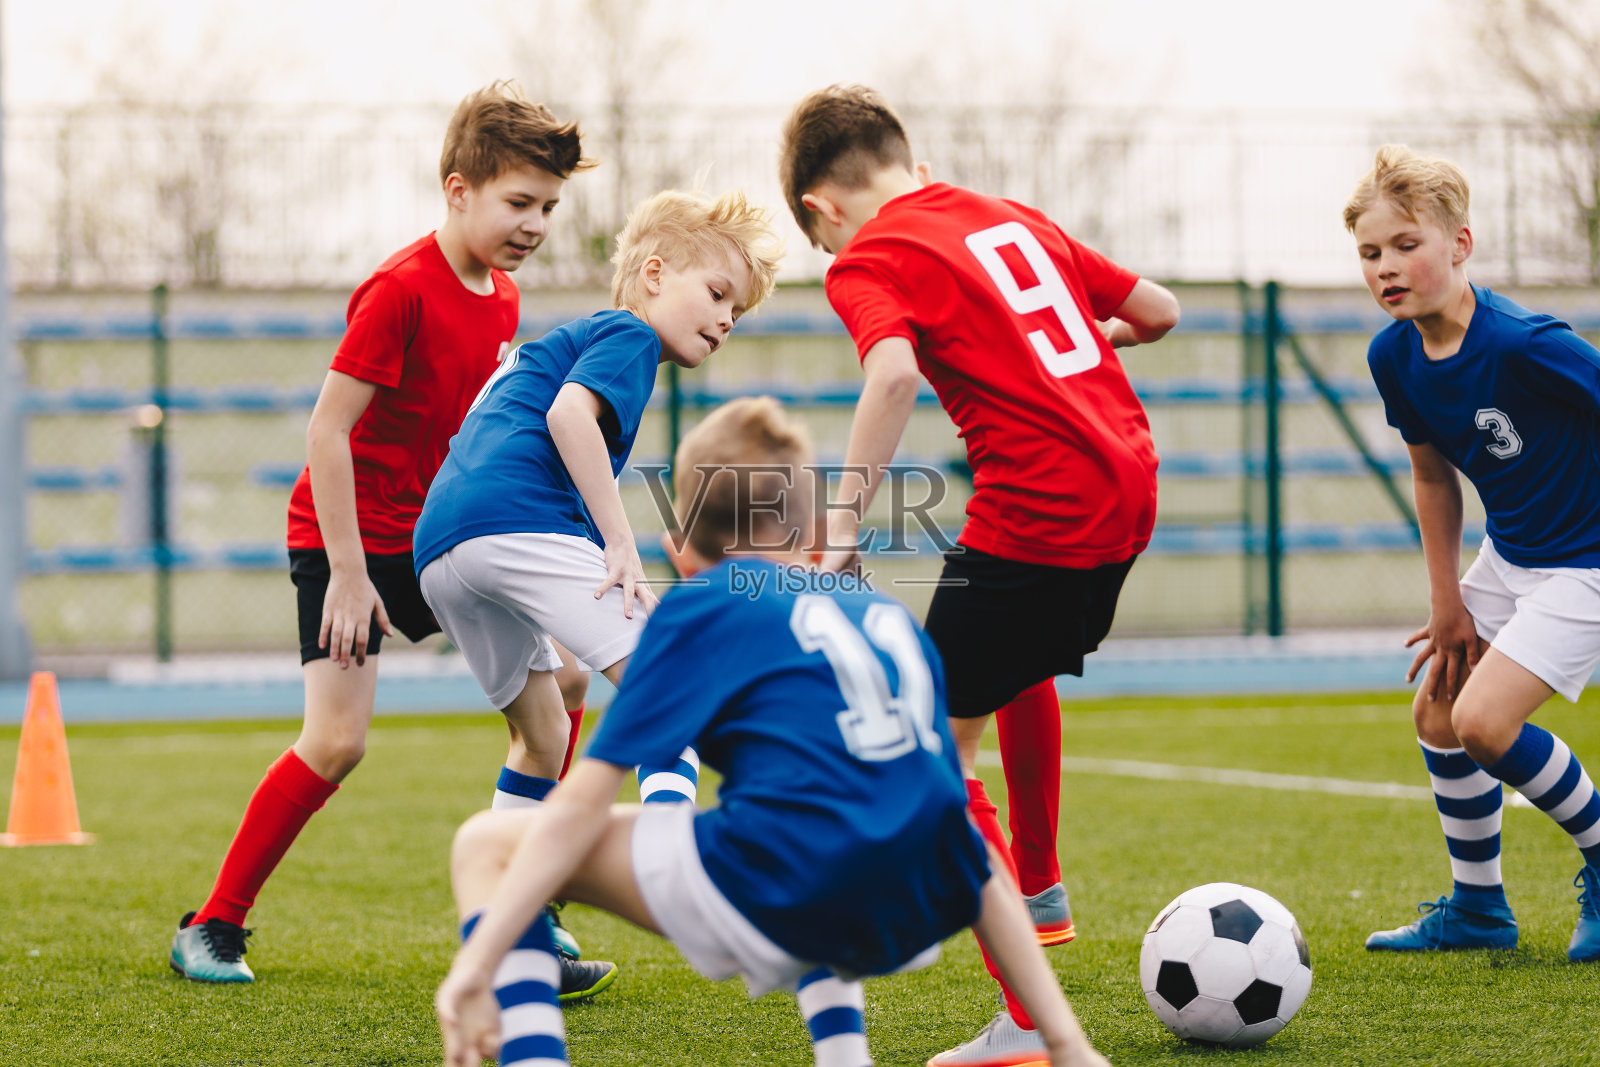 踢足球的少年图片素材免费下载 - 觅知网